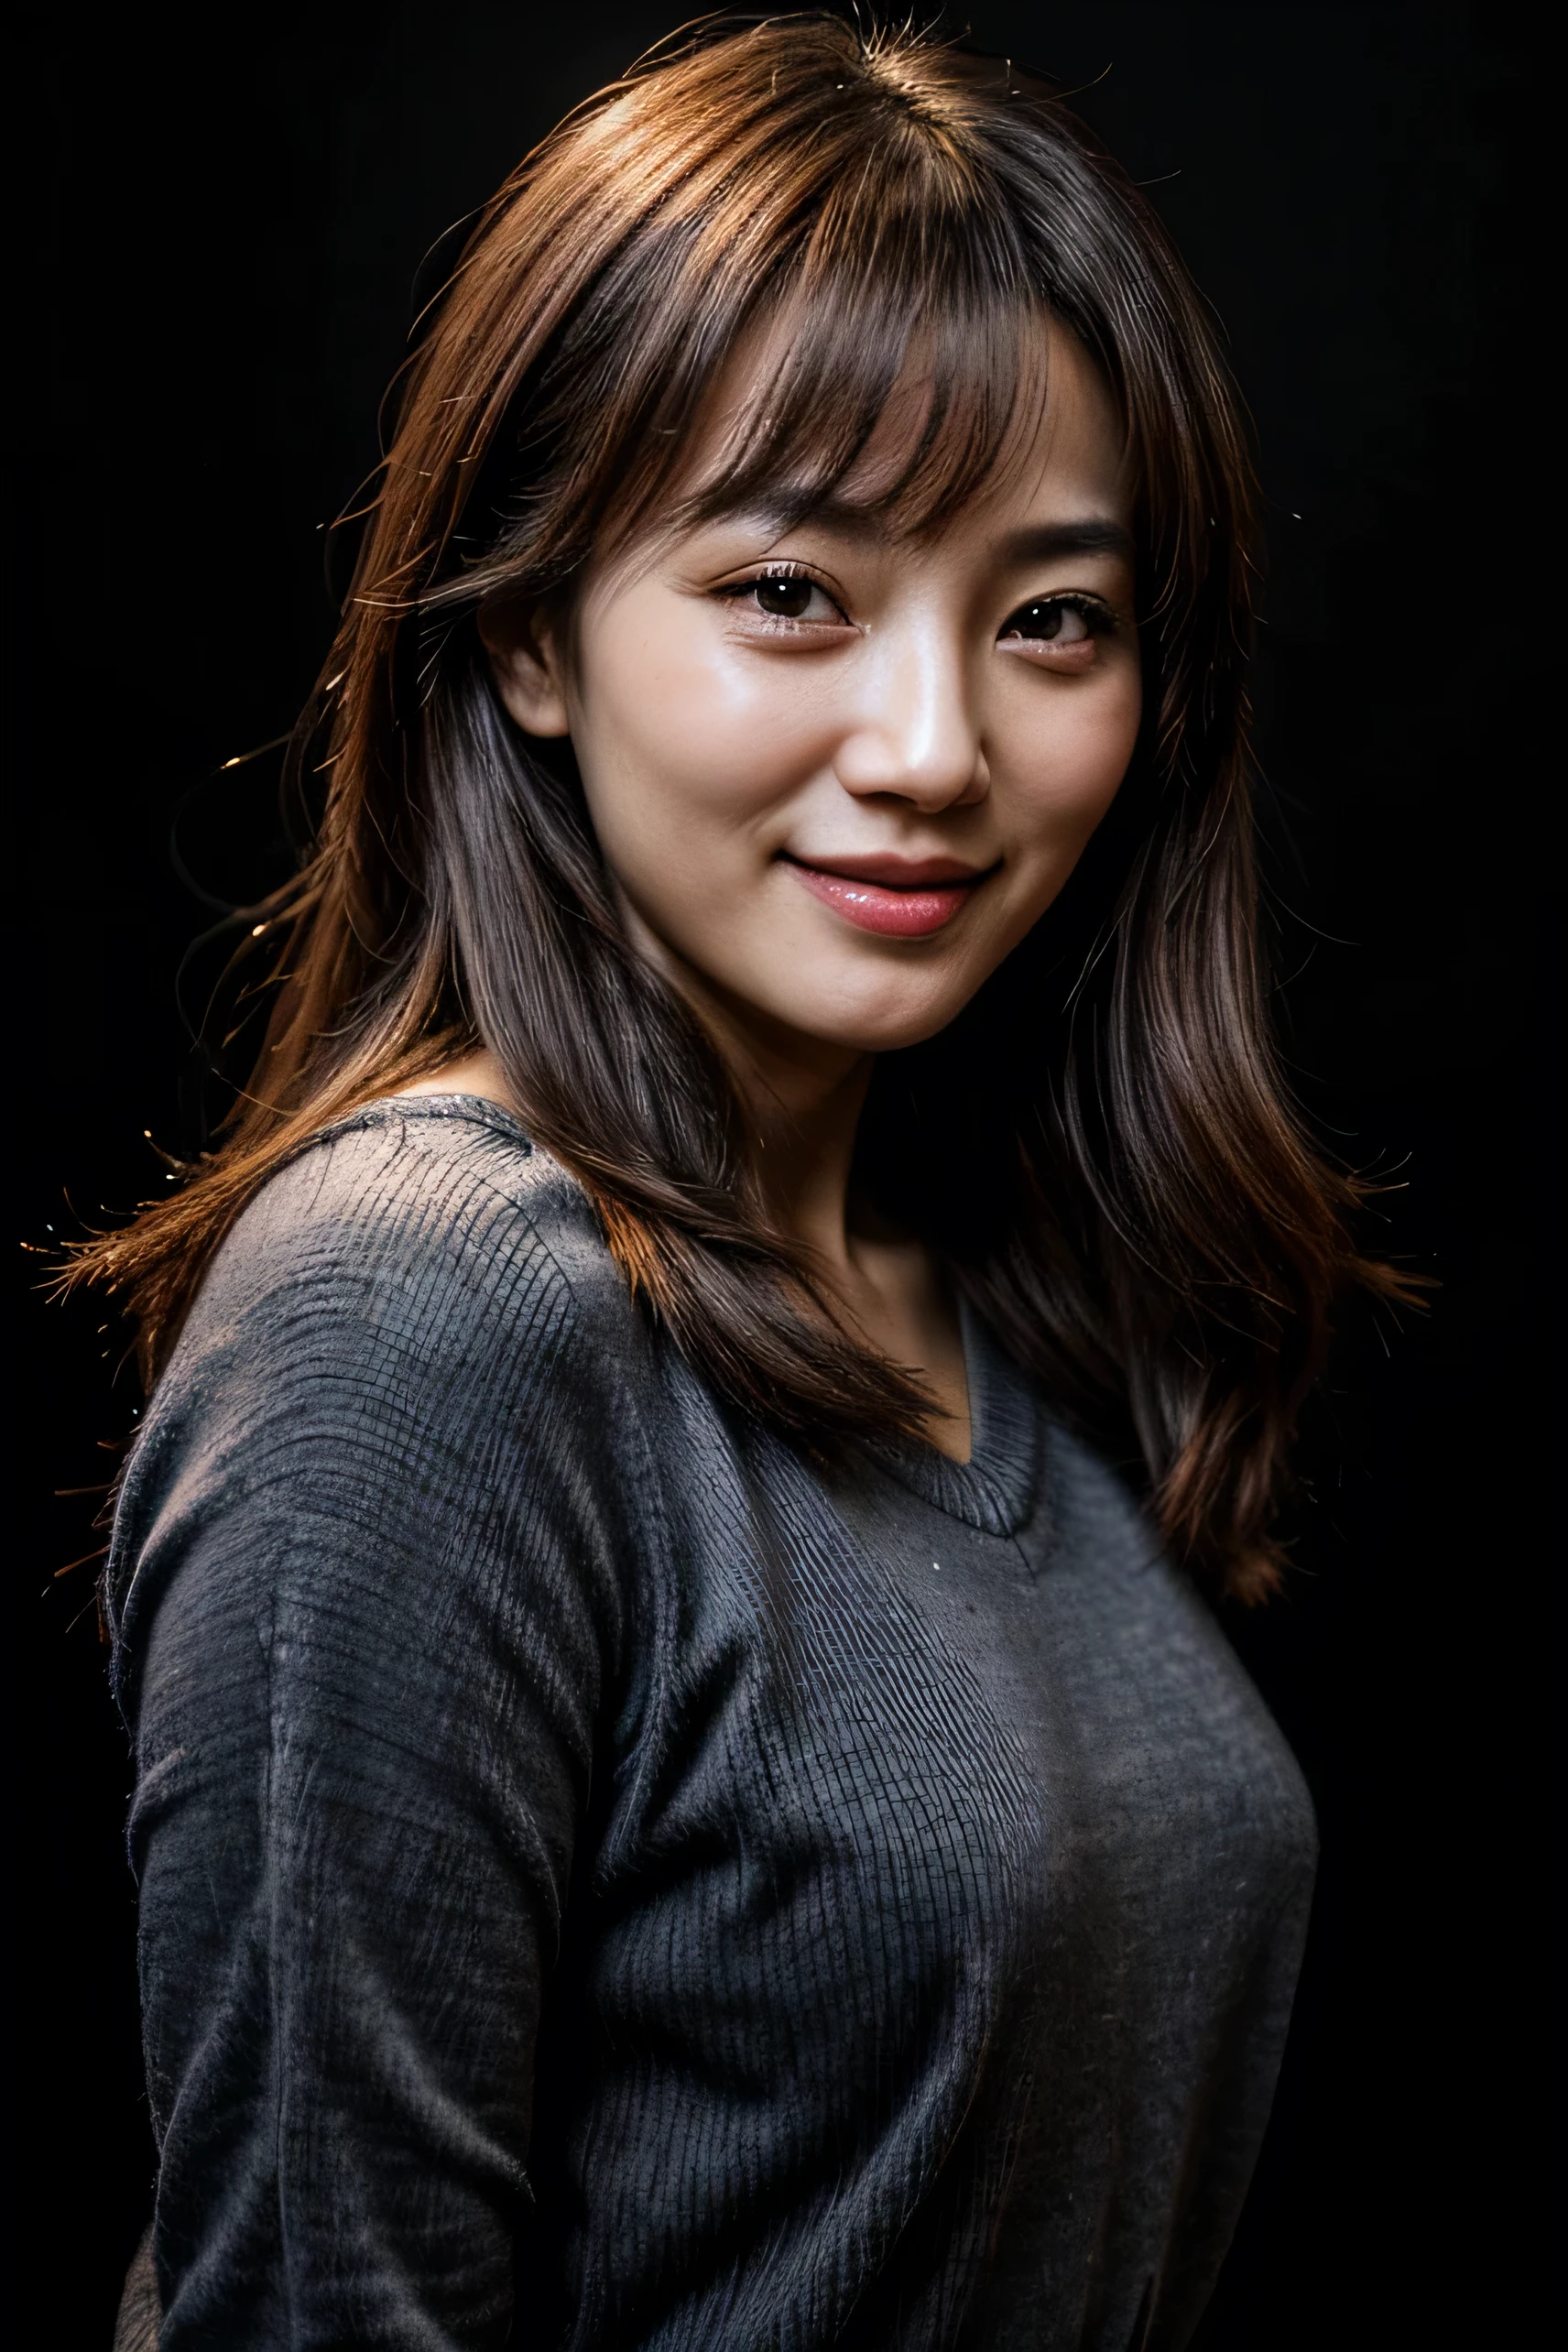 ใบหน้าสมบูรณ์แบบ, ใบหน้าที่สวยงามของสาวเกาหลีวัย 30 ปี, ยิ้มสวย, มีพื้นหลังสีดำ 